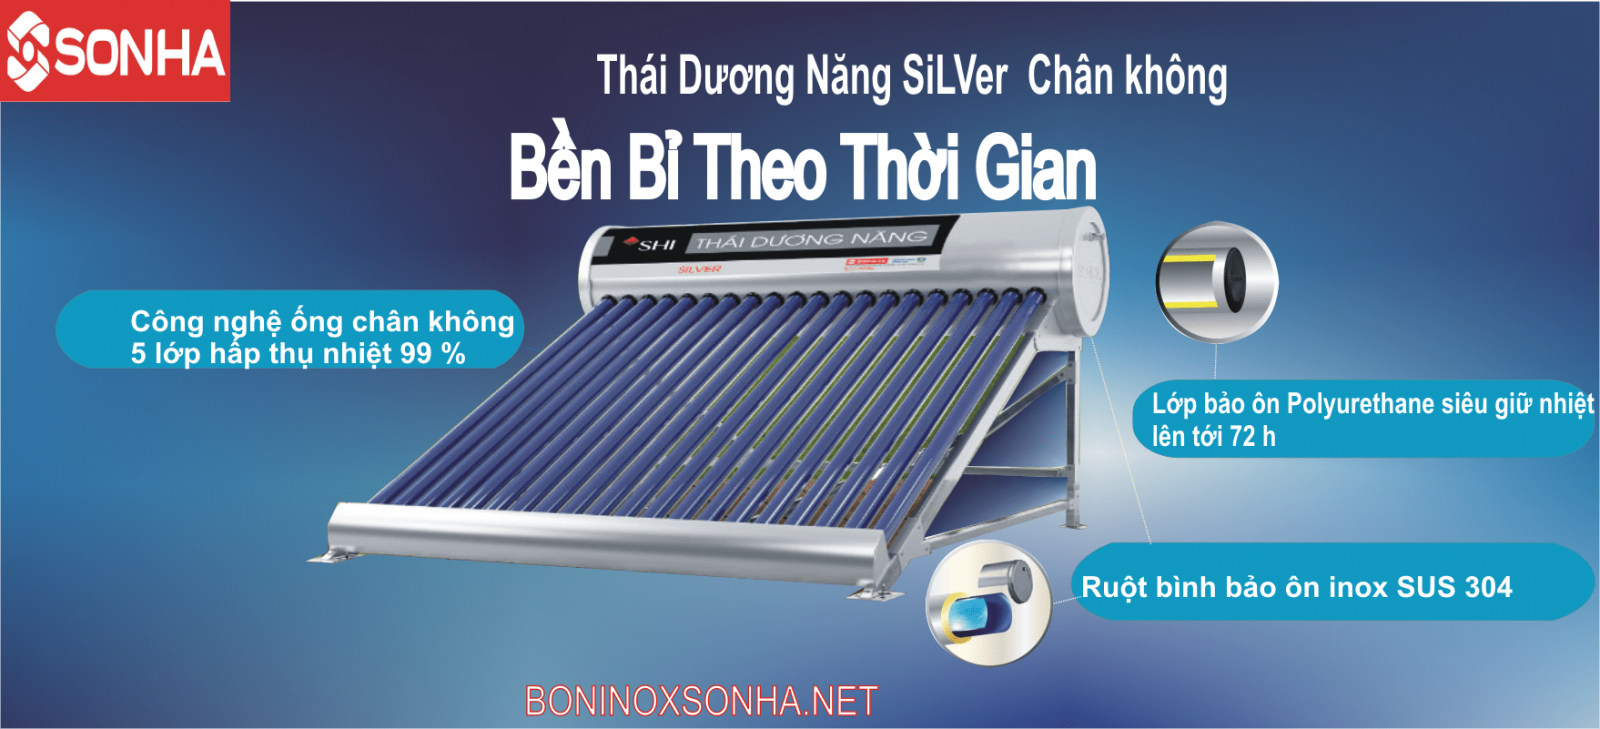 THÁI DƯƠNG NĂNG SILVER 58 - 180 Chân Không Sơn Hà